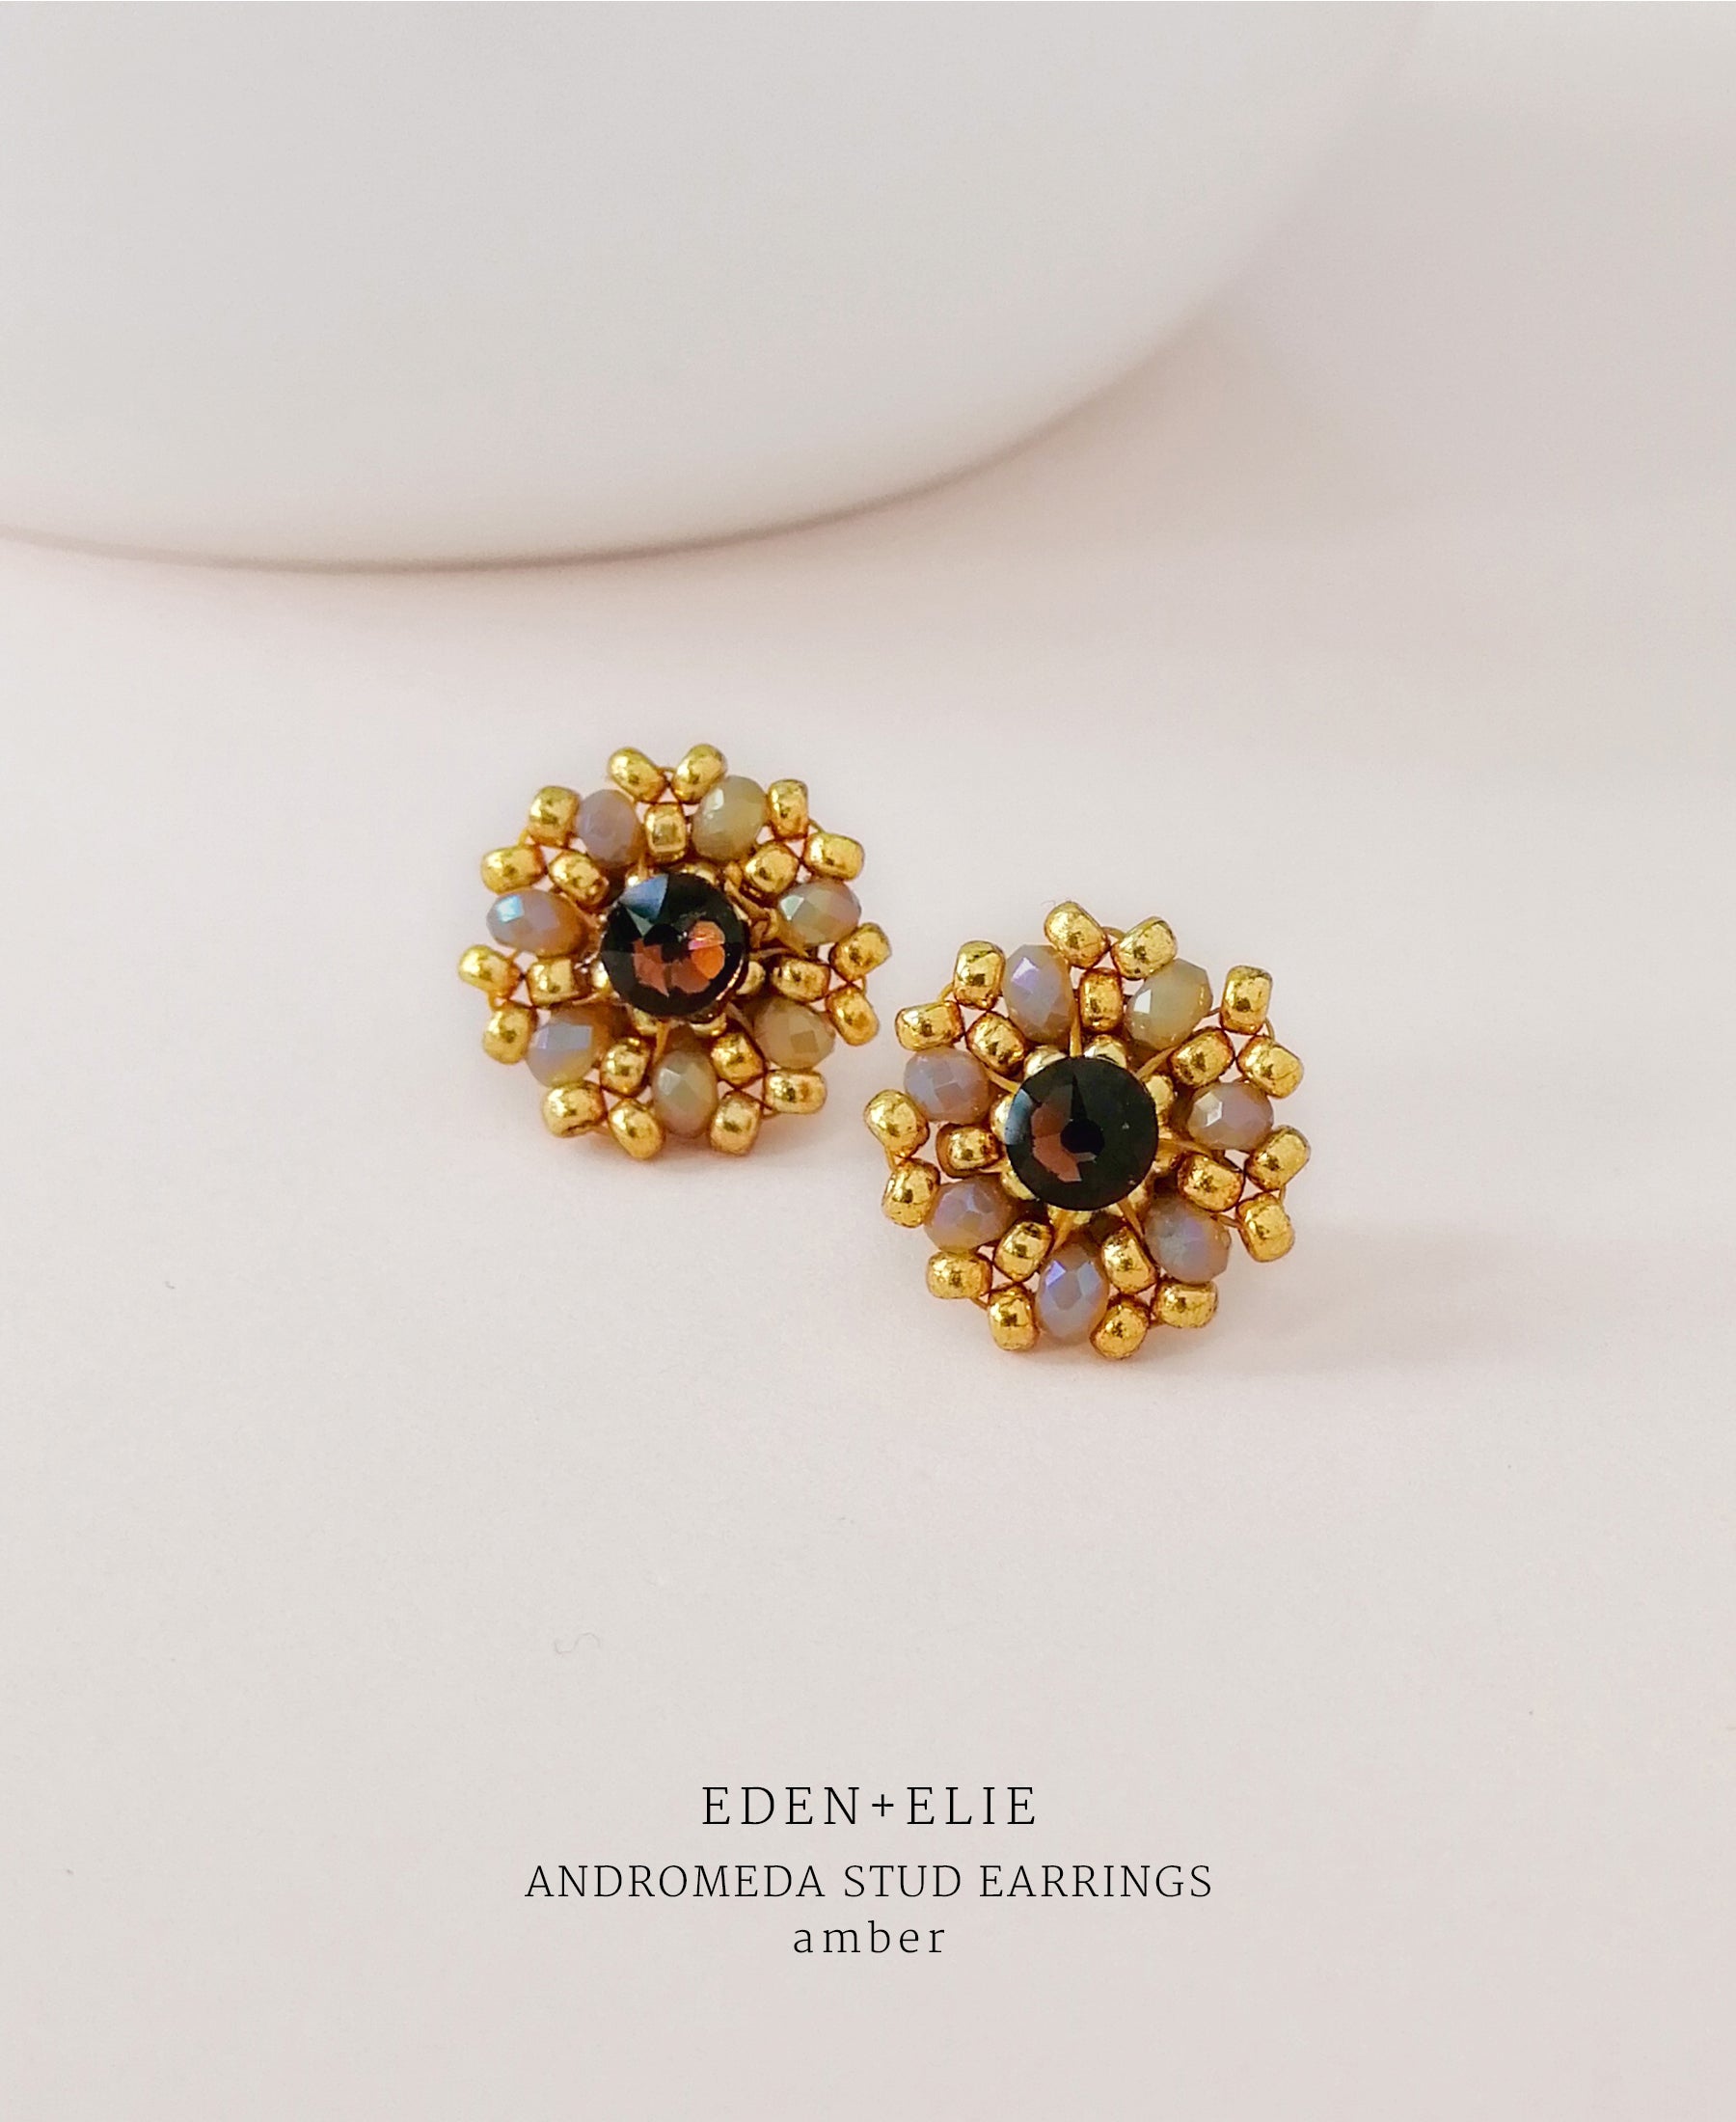 EDEN + ELIE Andromeda stud earrings - amber